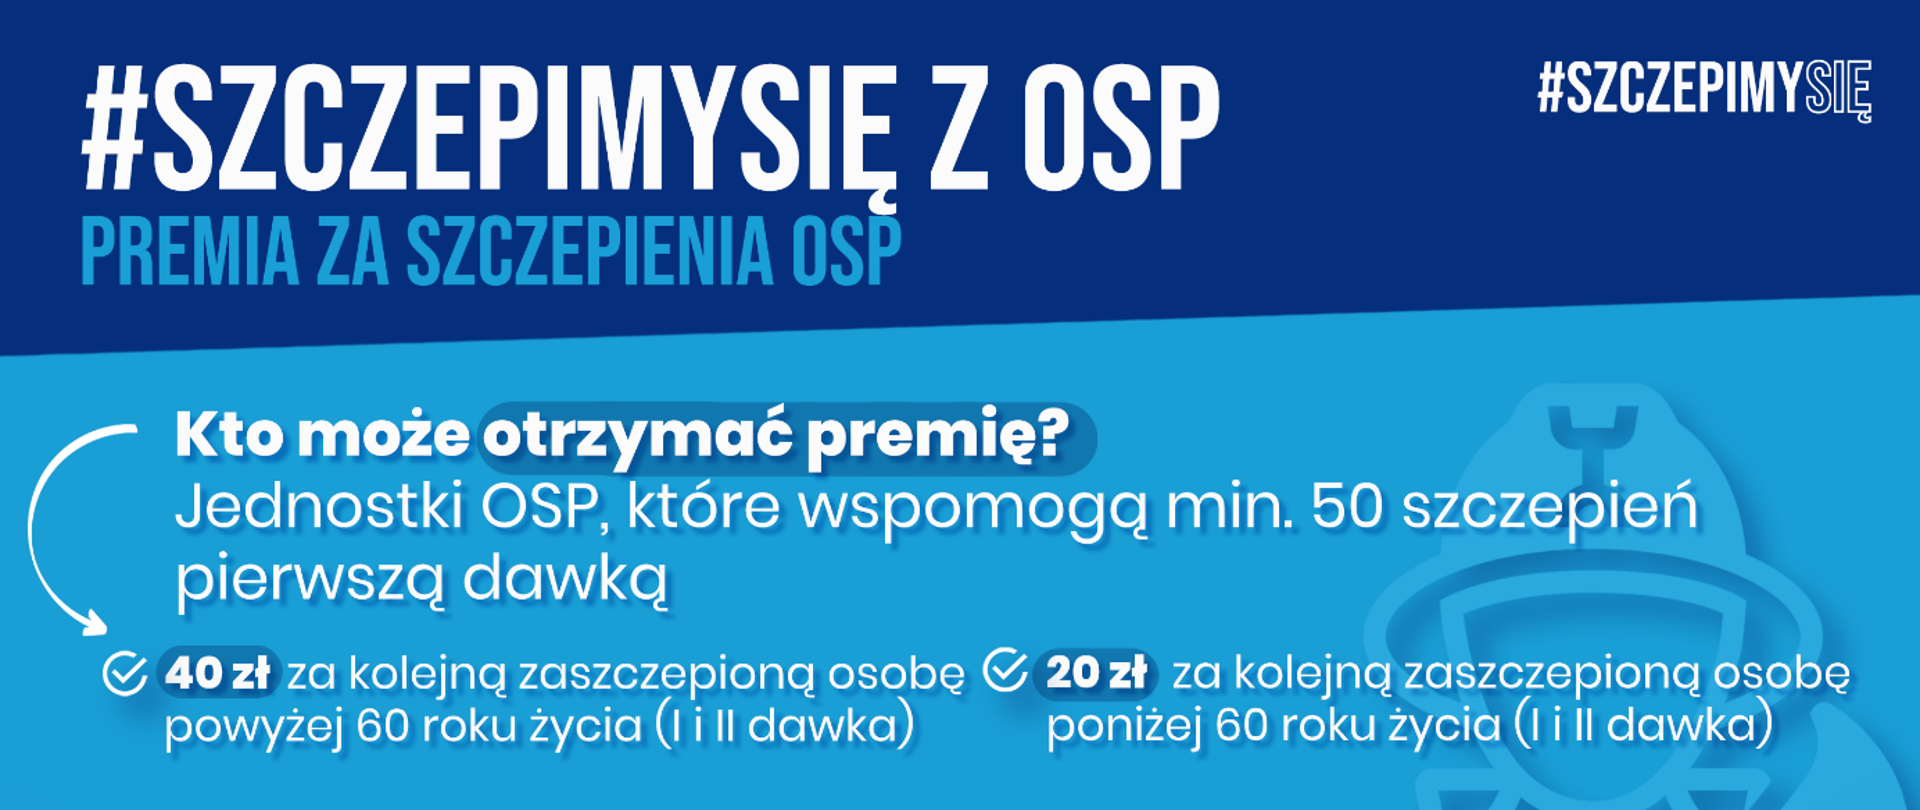 Plakat informacyjny o programie #SzczepimySię z OSP. Białe napisy na niebieskim tle.